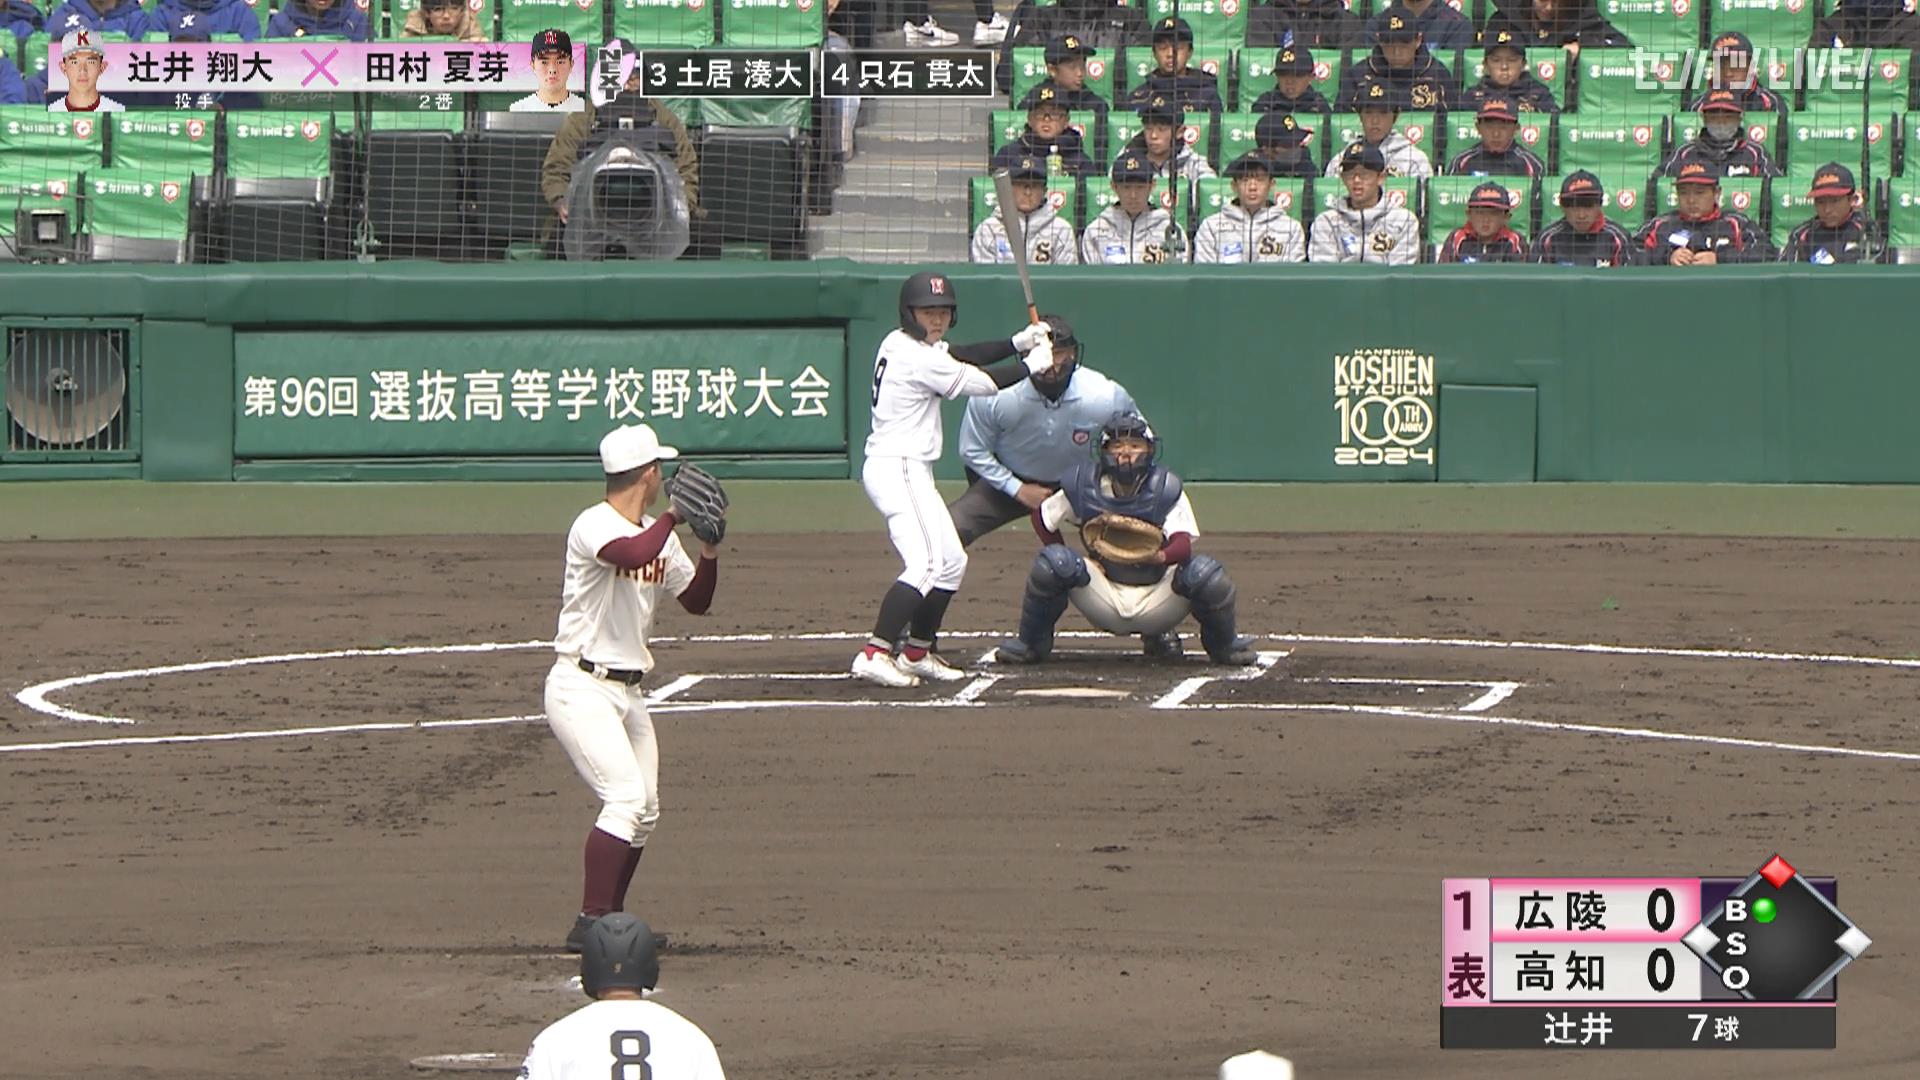 【センバツ高校野球】高知 - 広陵 1回表 広陵・田村 夏芽の打席。無死二塁、悪送球間に走者生還。